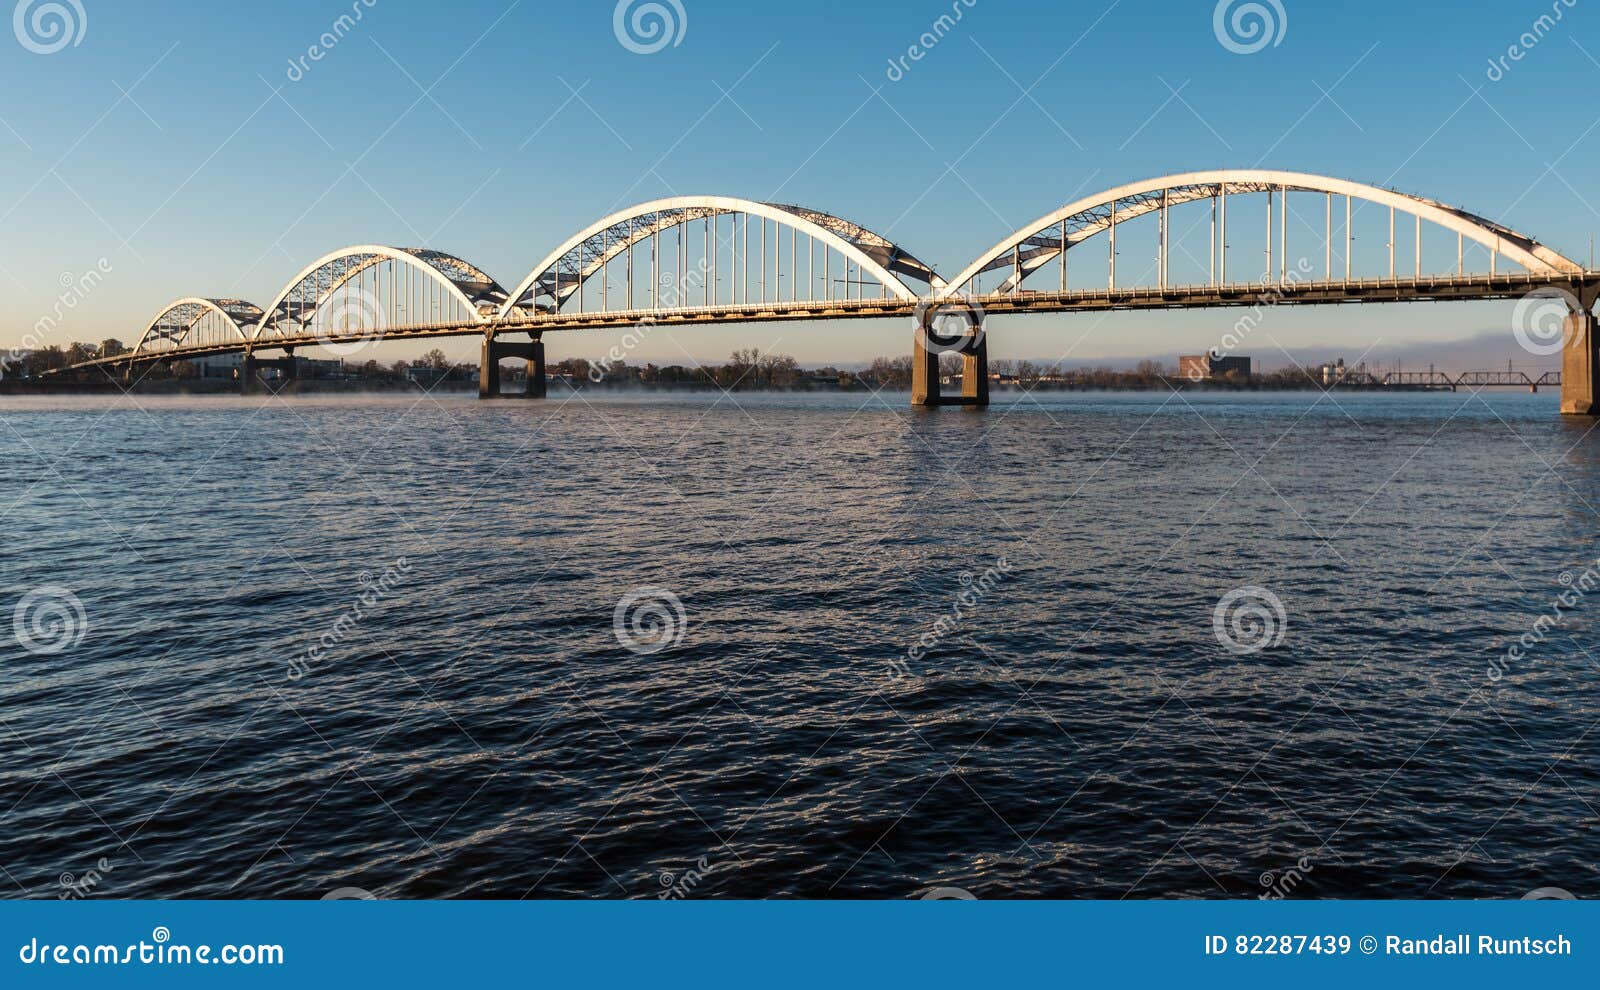 centennial bridge crosses the mississippi river